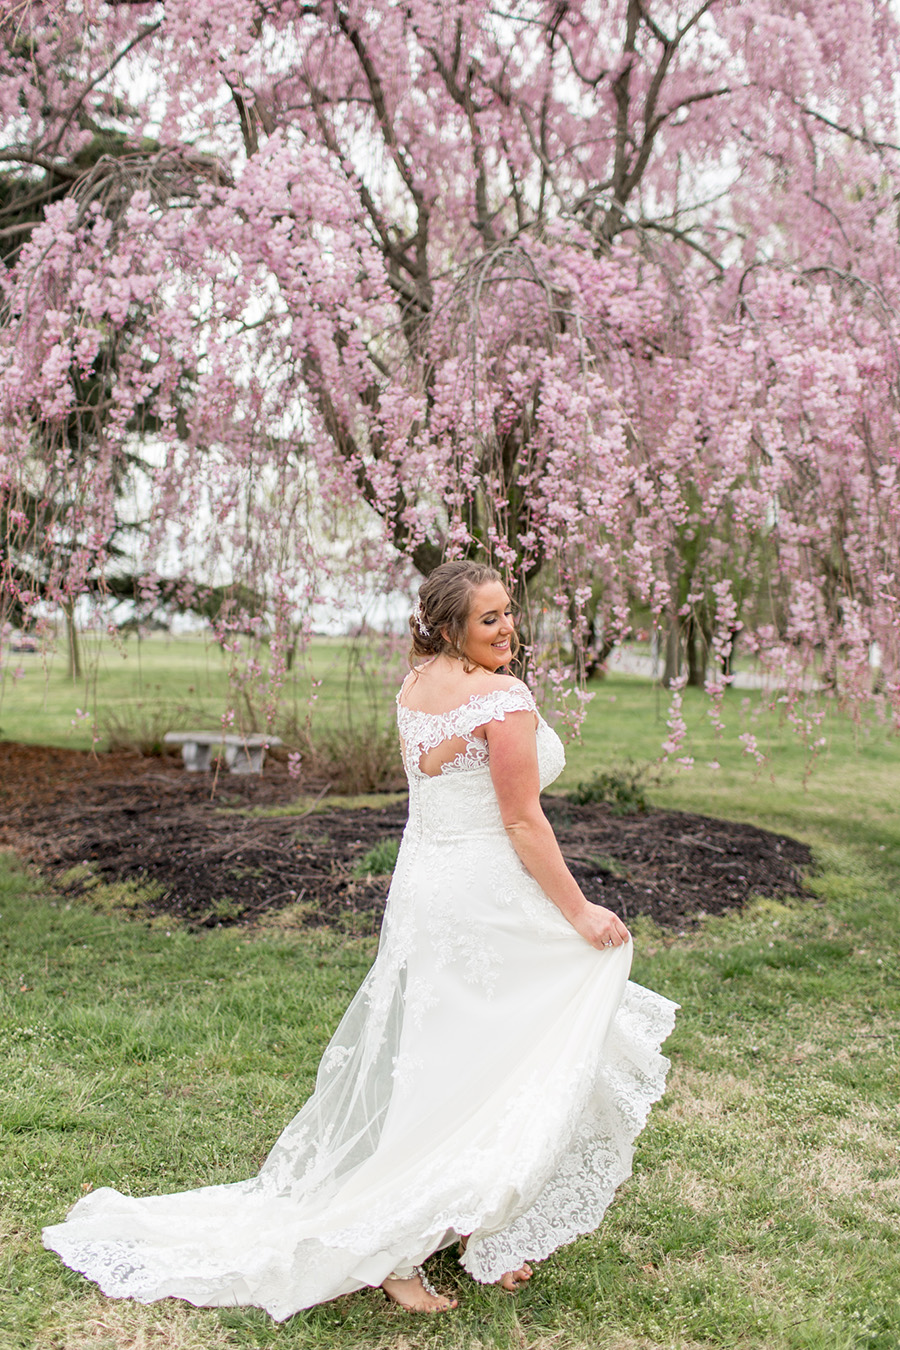 bride spins in her wedding dress